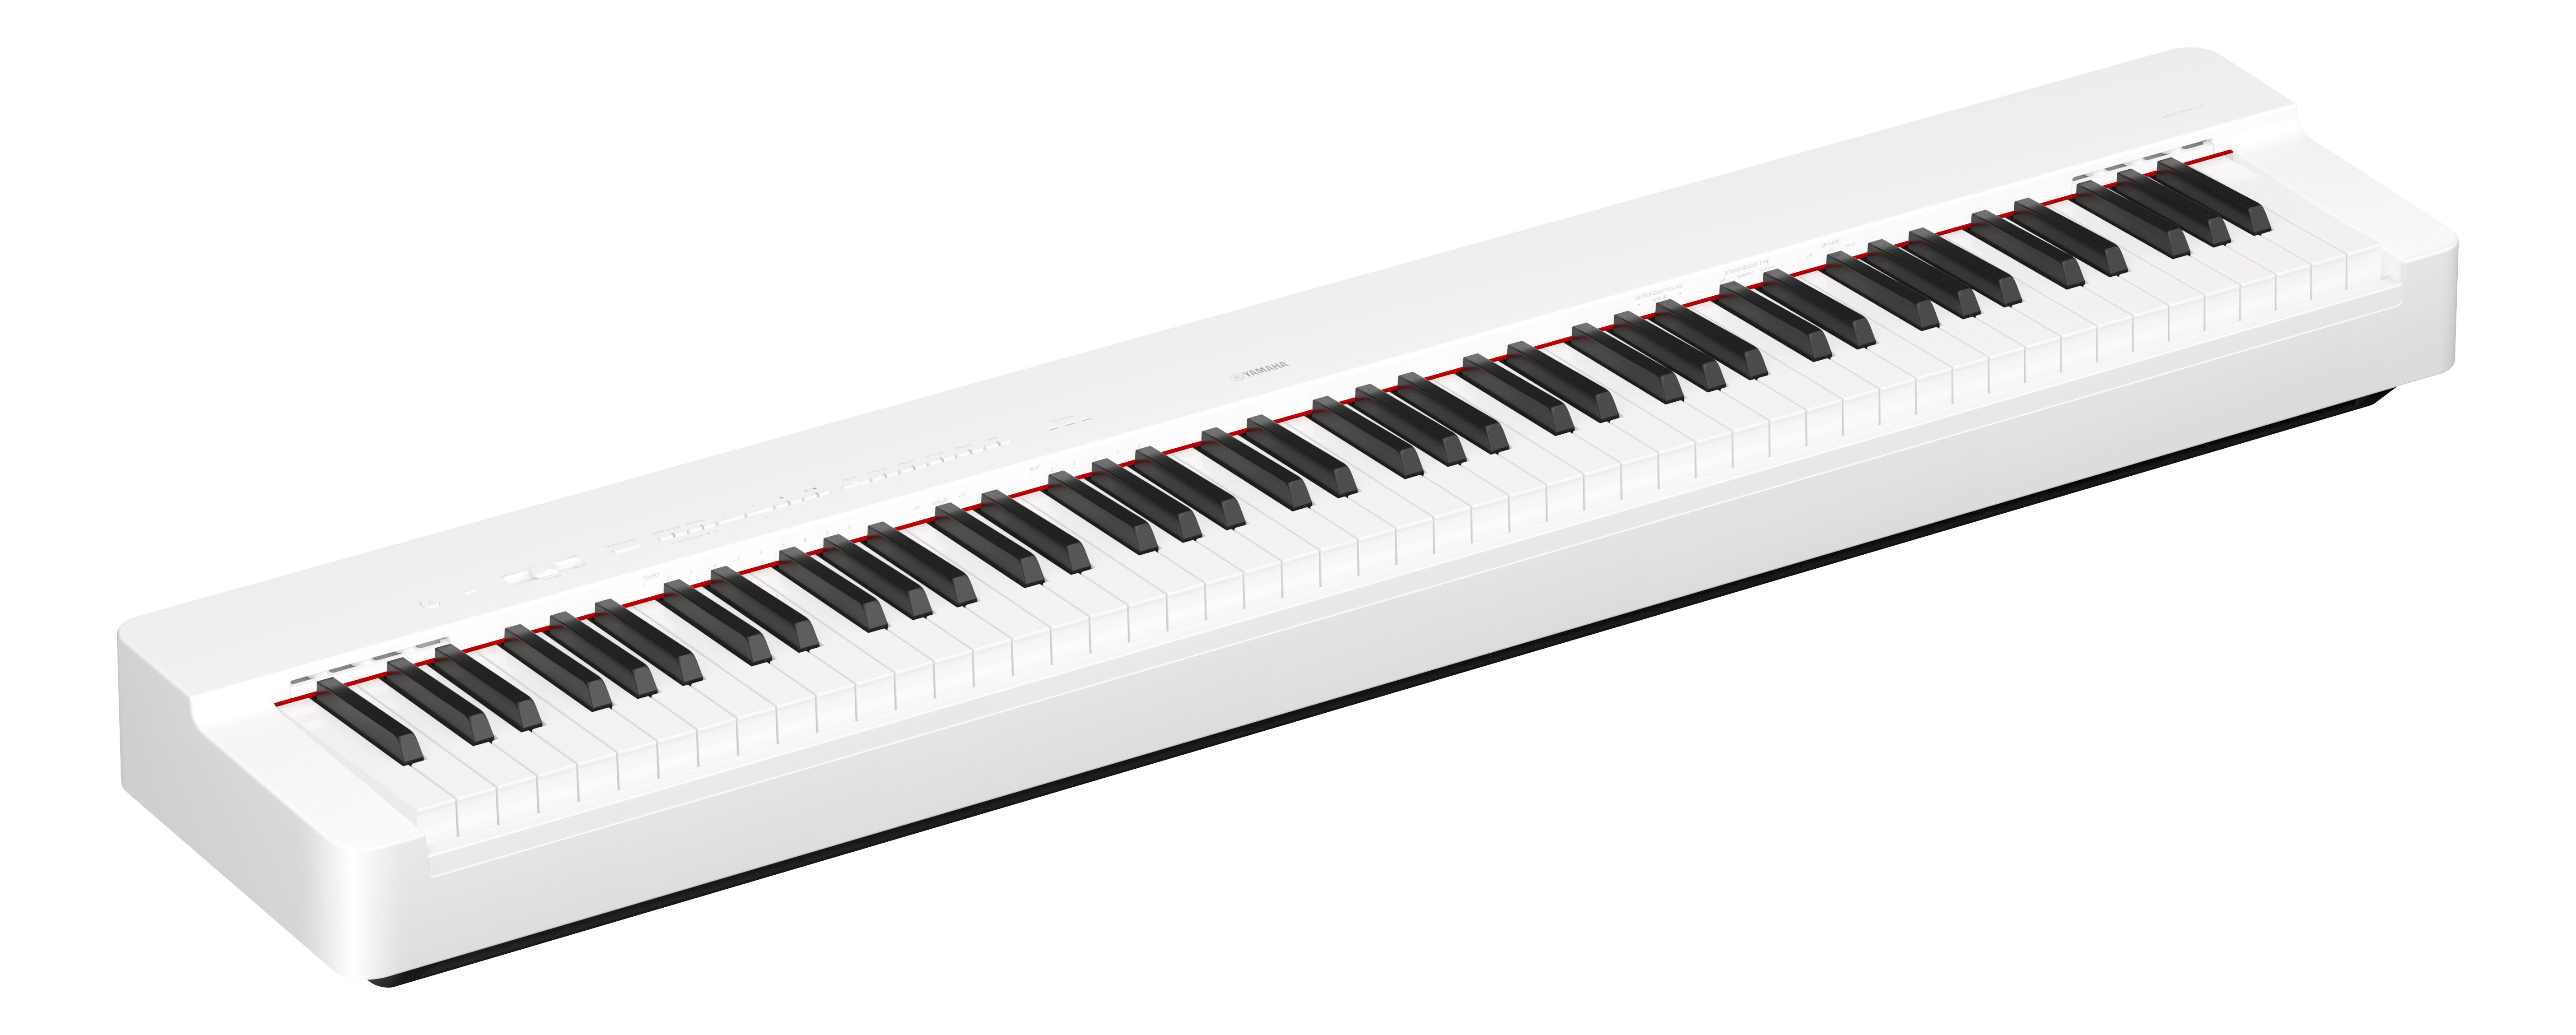 Yamaha P-225 White - Digital Klavier - Variation 5